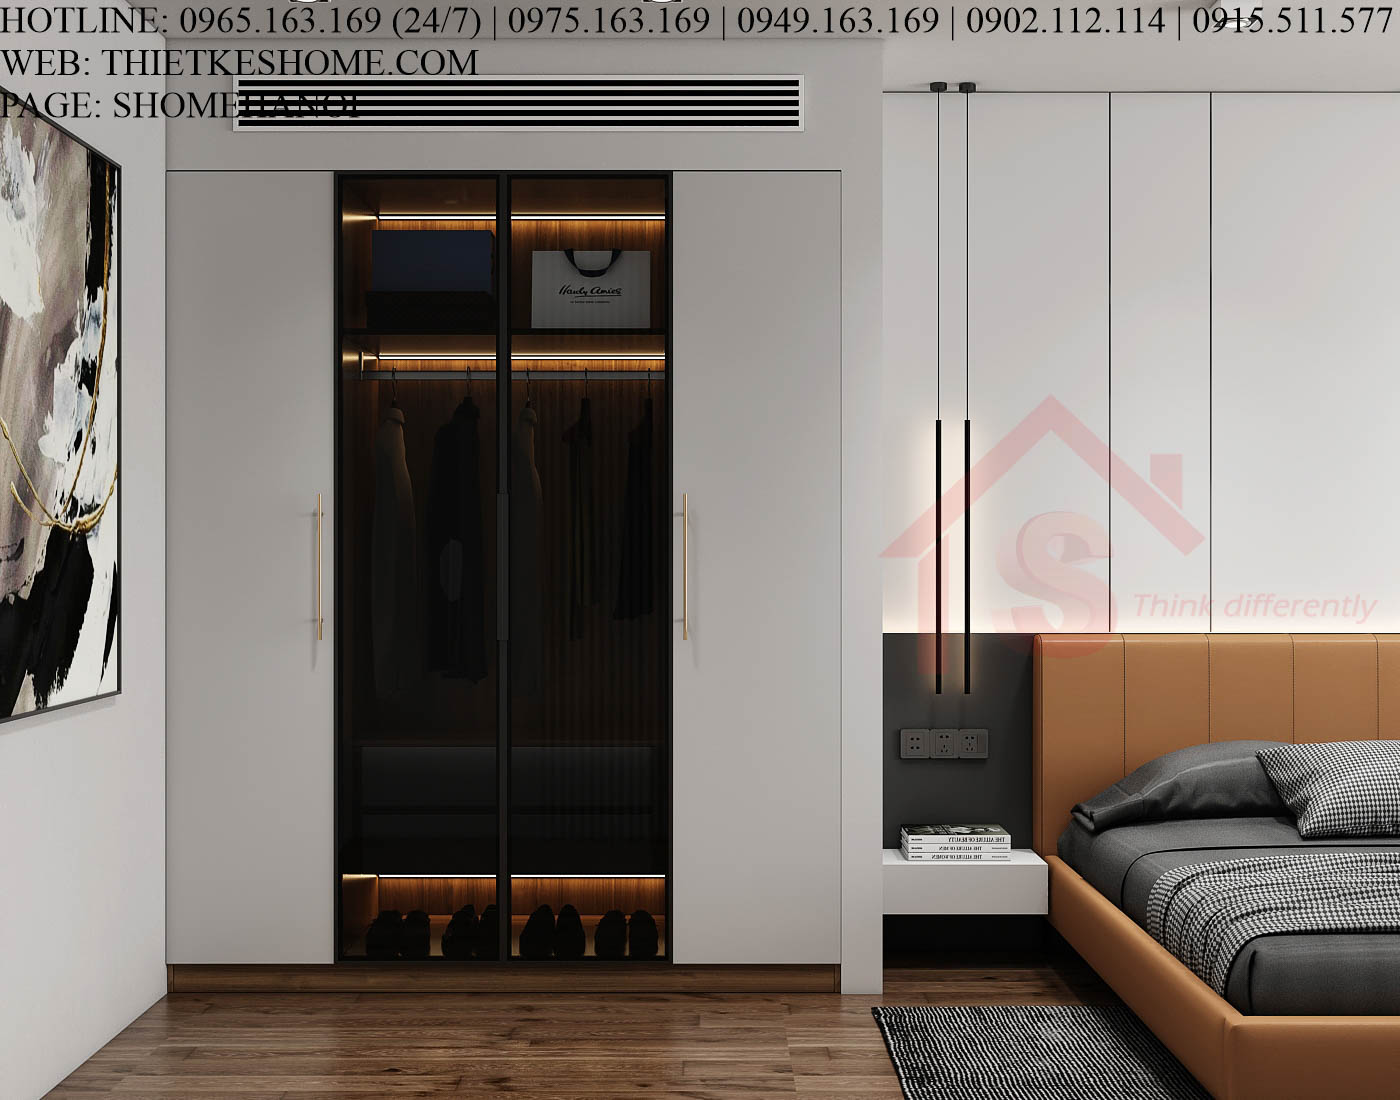 S HOME Combo mẫu nội thất phòng ngủ đẹp hiện đại tiện dụng SHOME6803